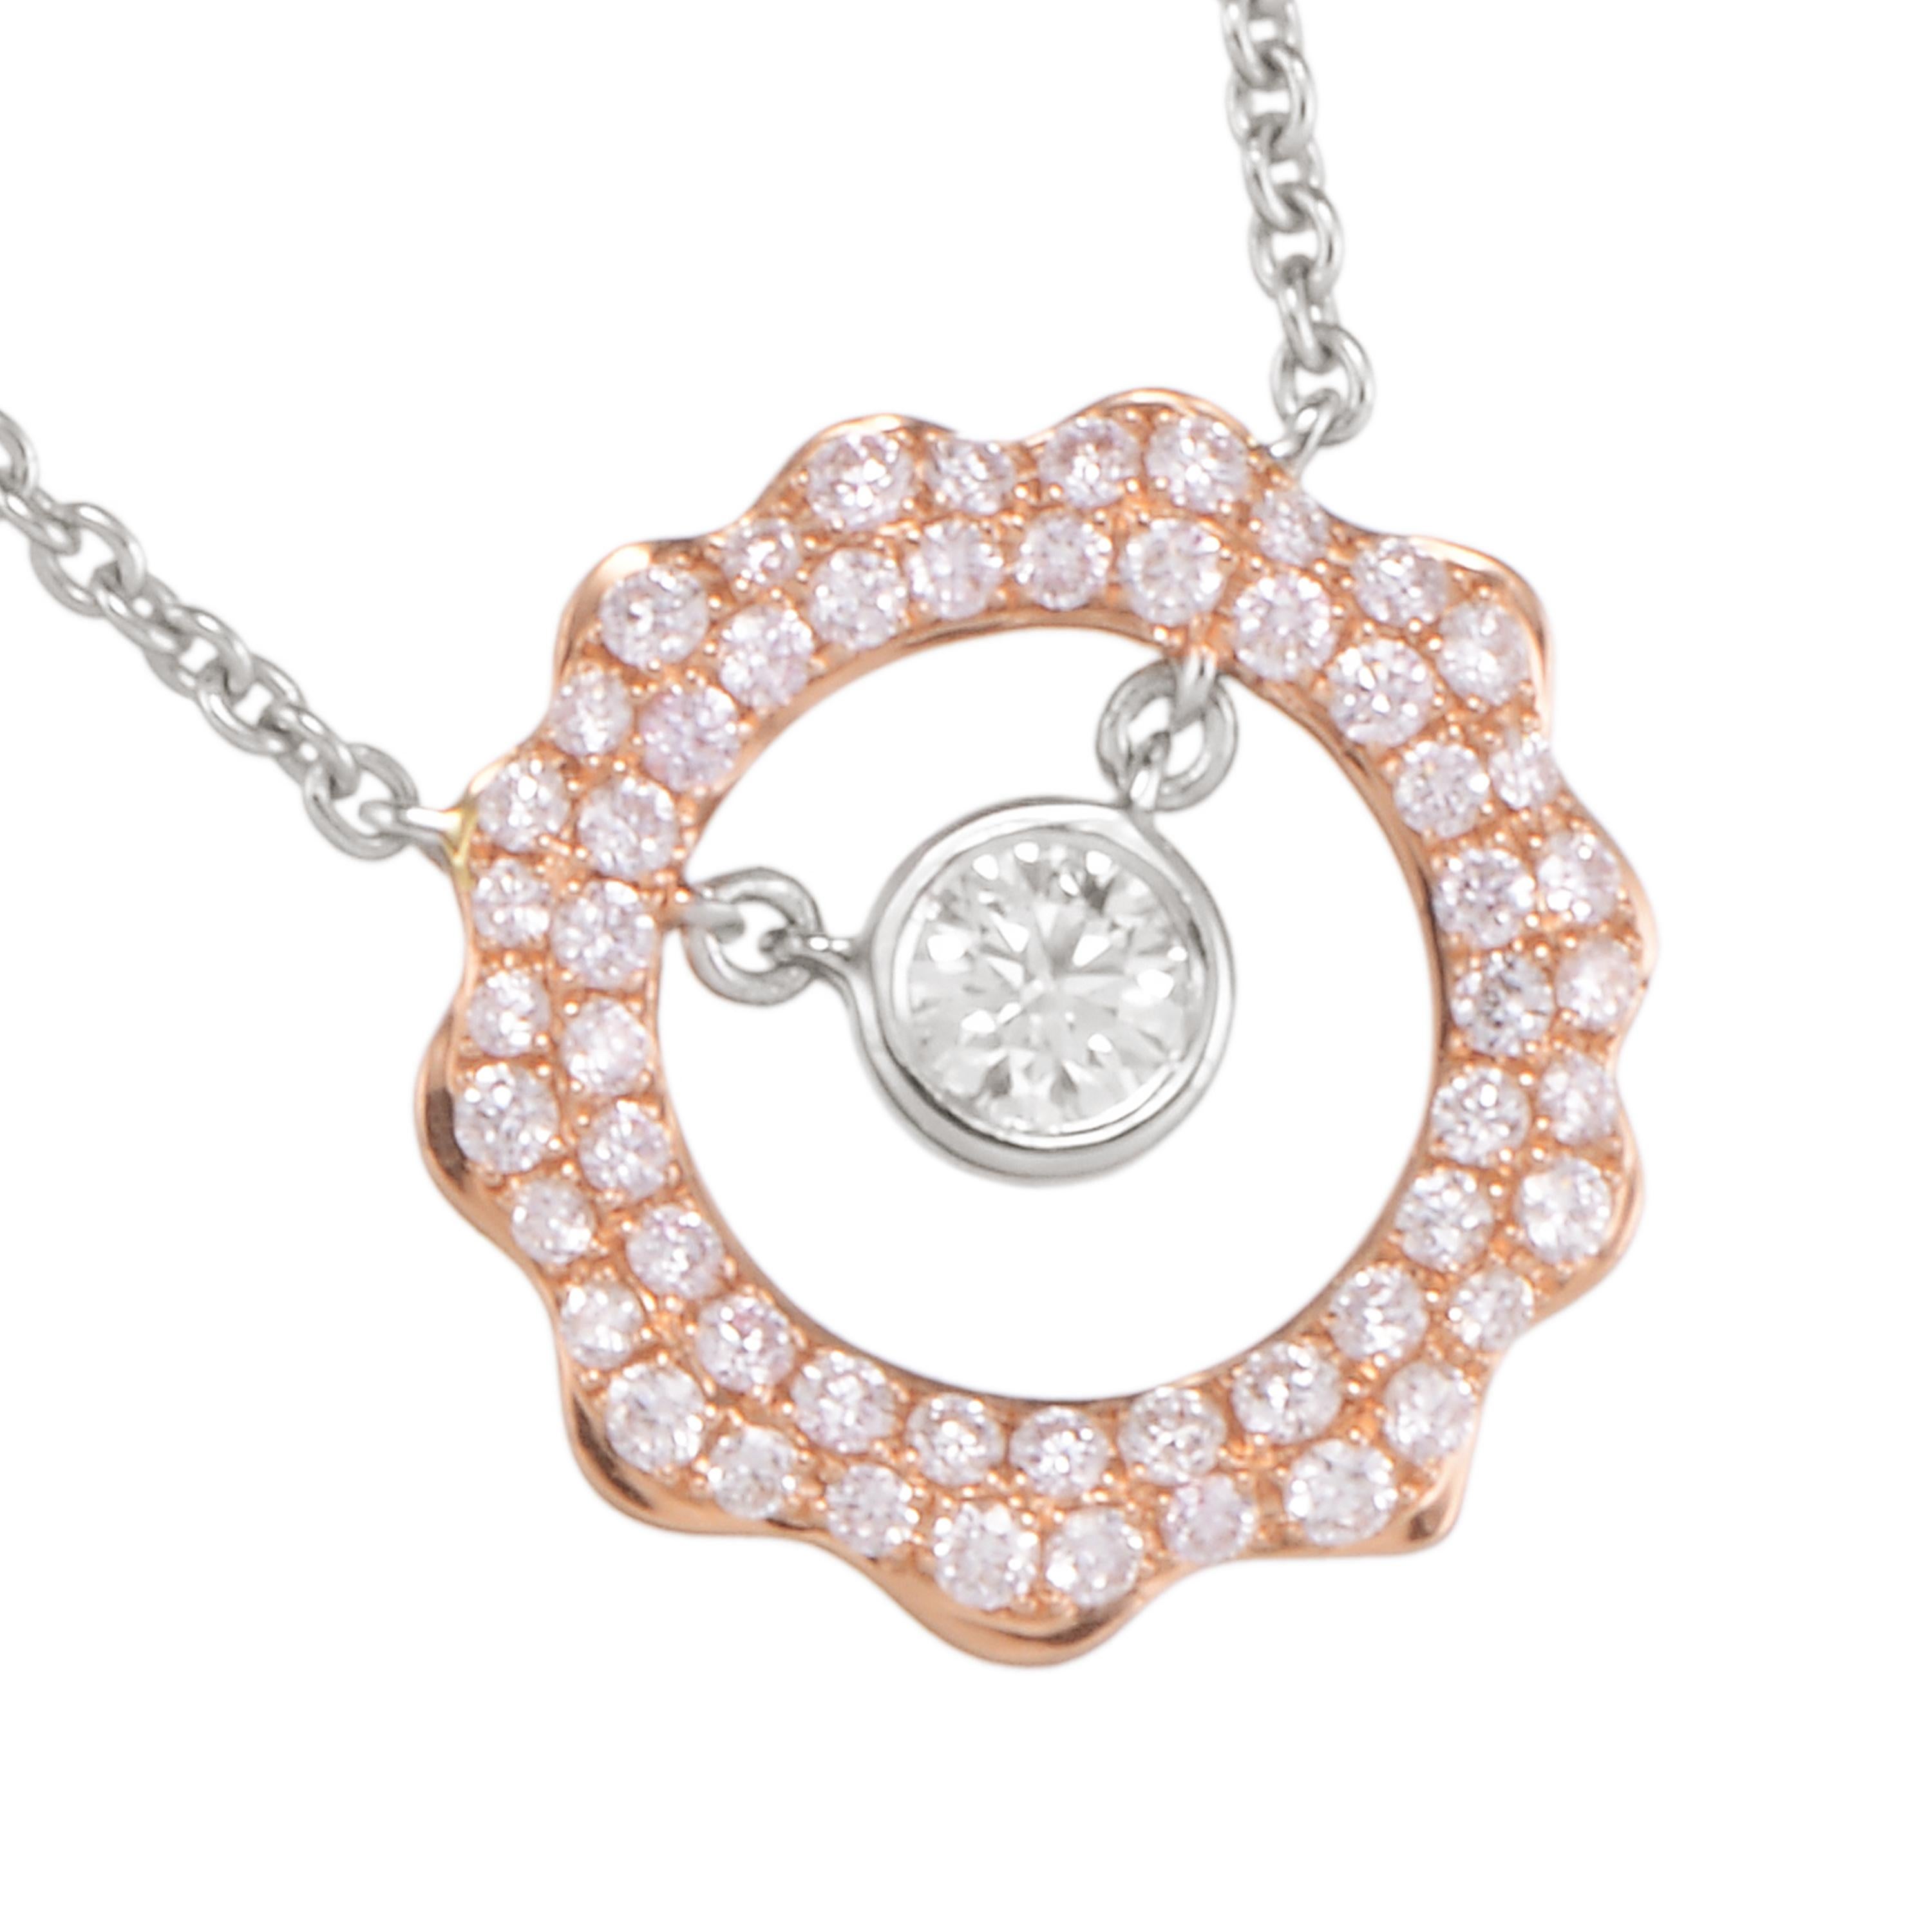 En forme de soleil, le collier pendentif de Butani est fabriqué à la main en or rose 18 carats et comporte un diamant rond de taille brillant de 0,28 carat au centre, illuminé par 0,74 carat de diamants pavés étincelants.  Portez-la seule ou